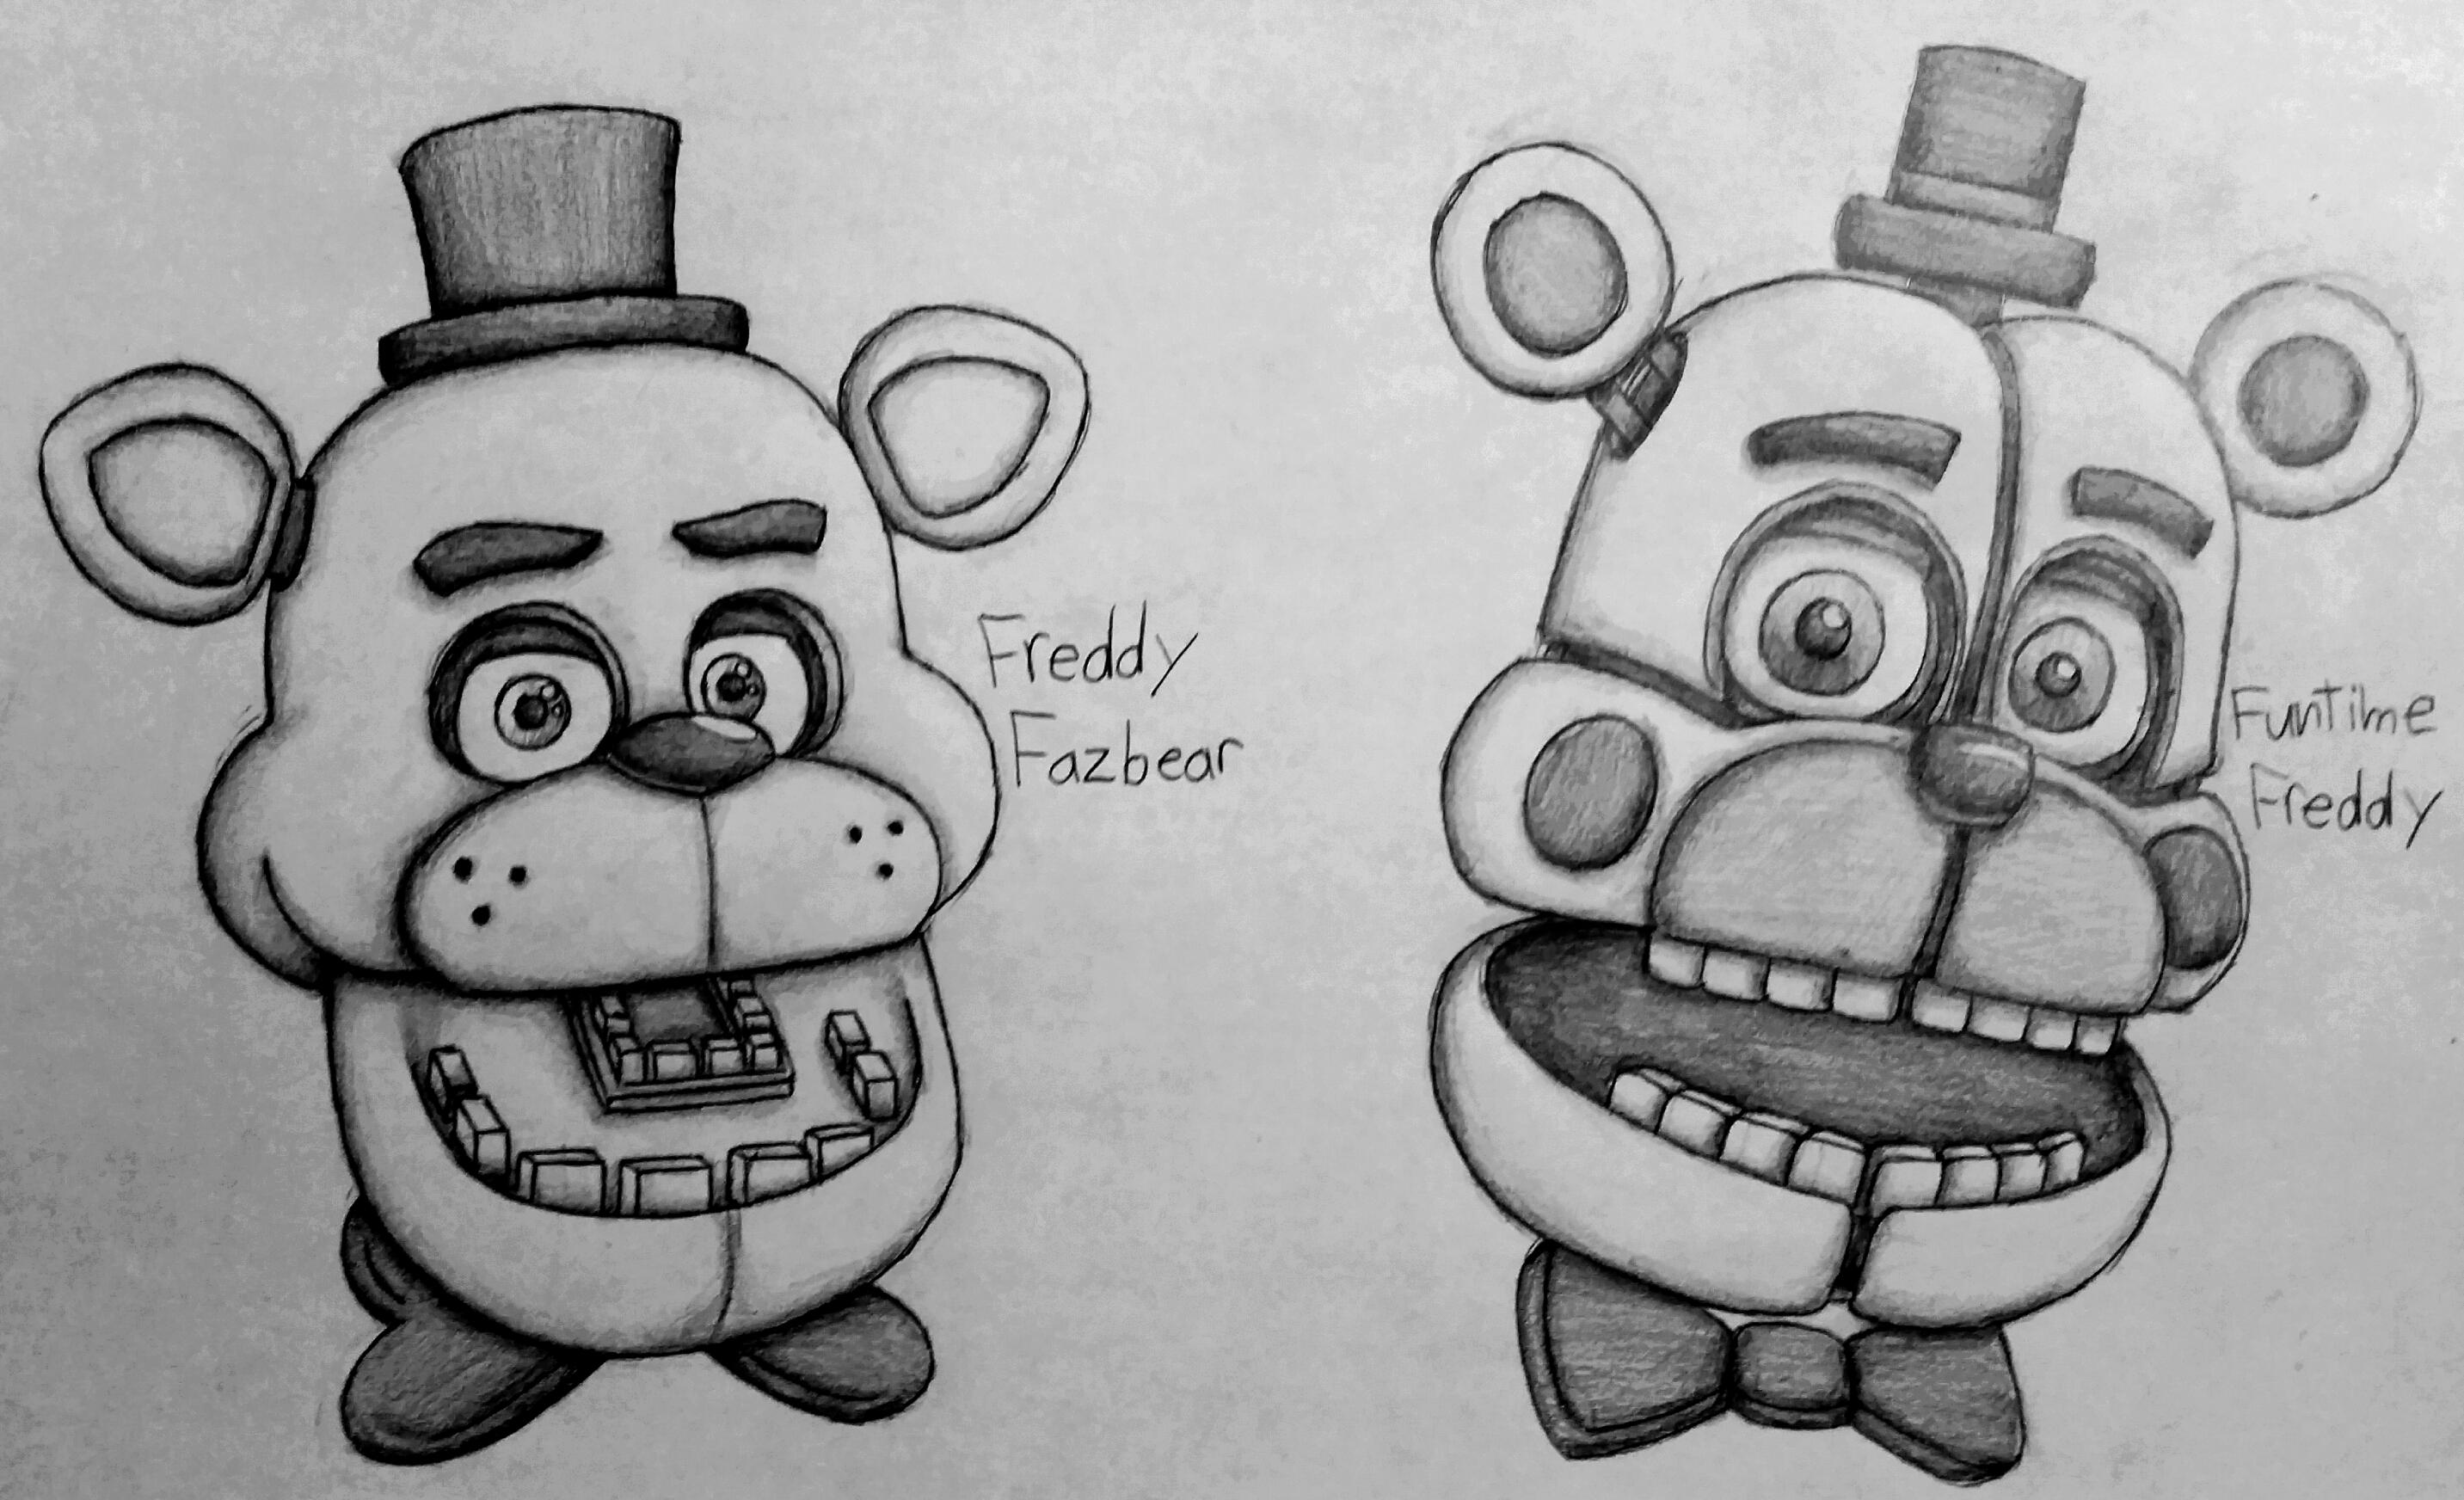 Freddy Fazbear And F. 1. 0. Like. 